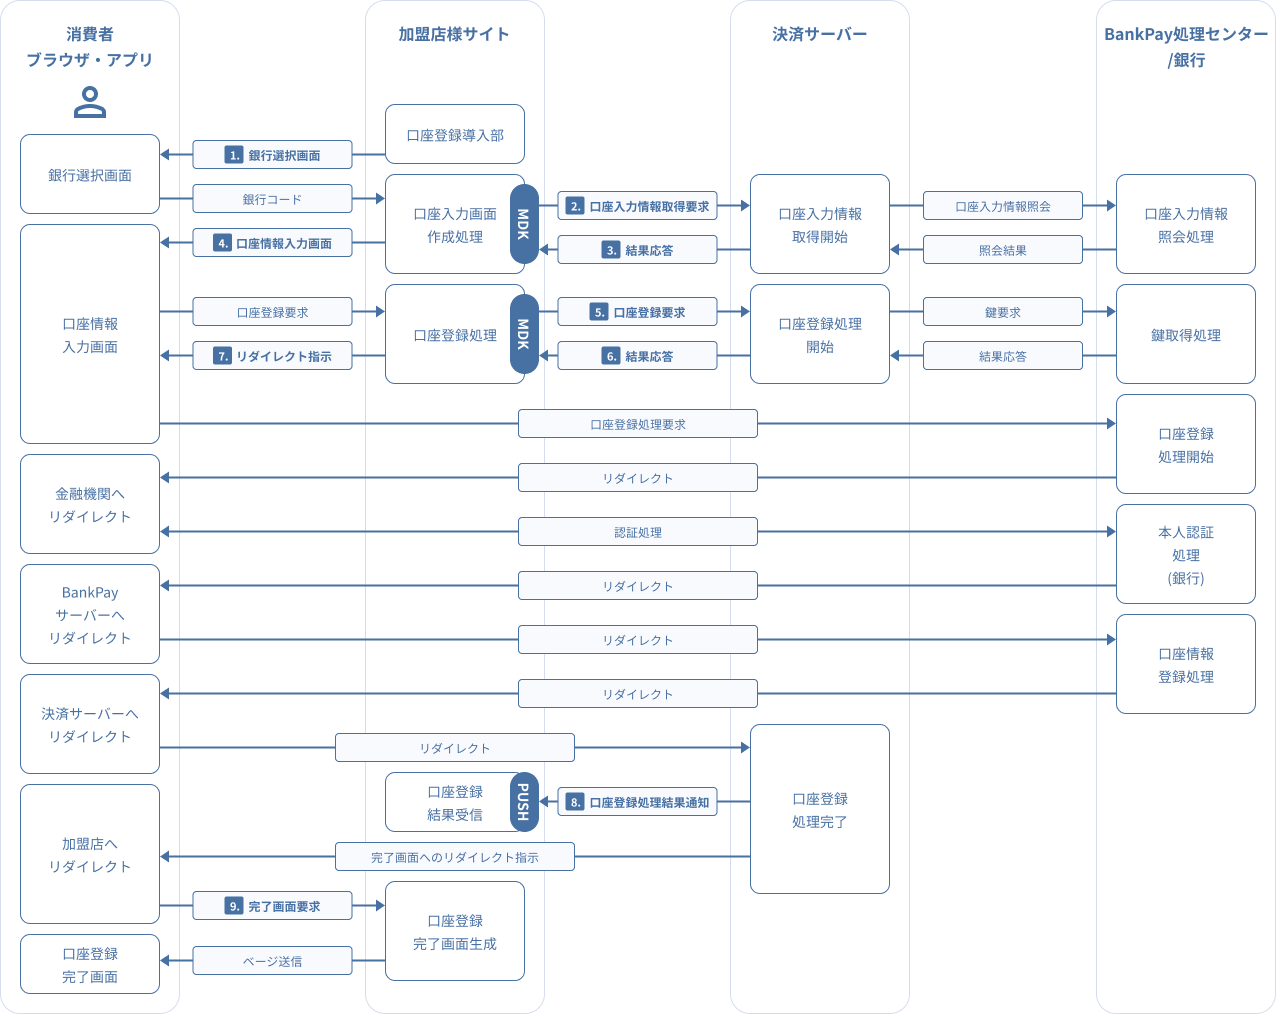 図 3.6 MDK利用時システム処理概要図（BankPay口座登録）